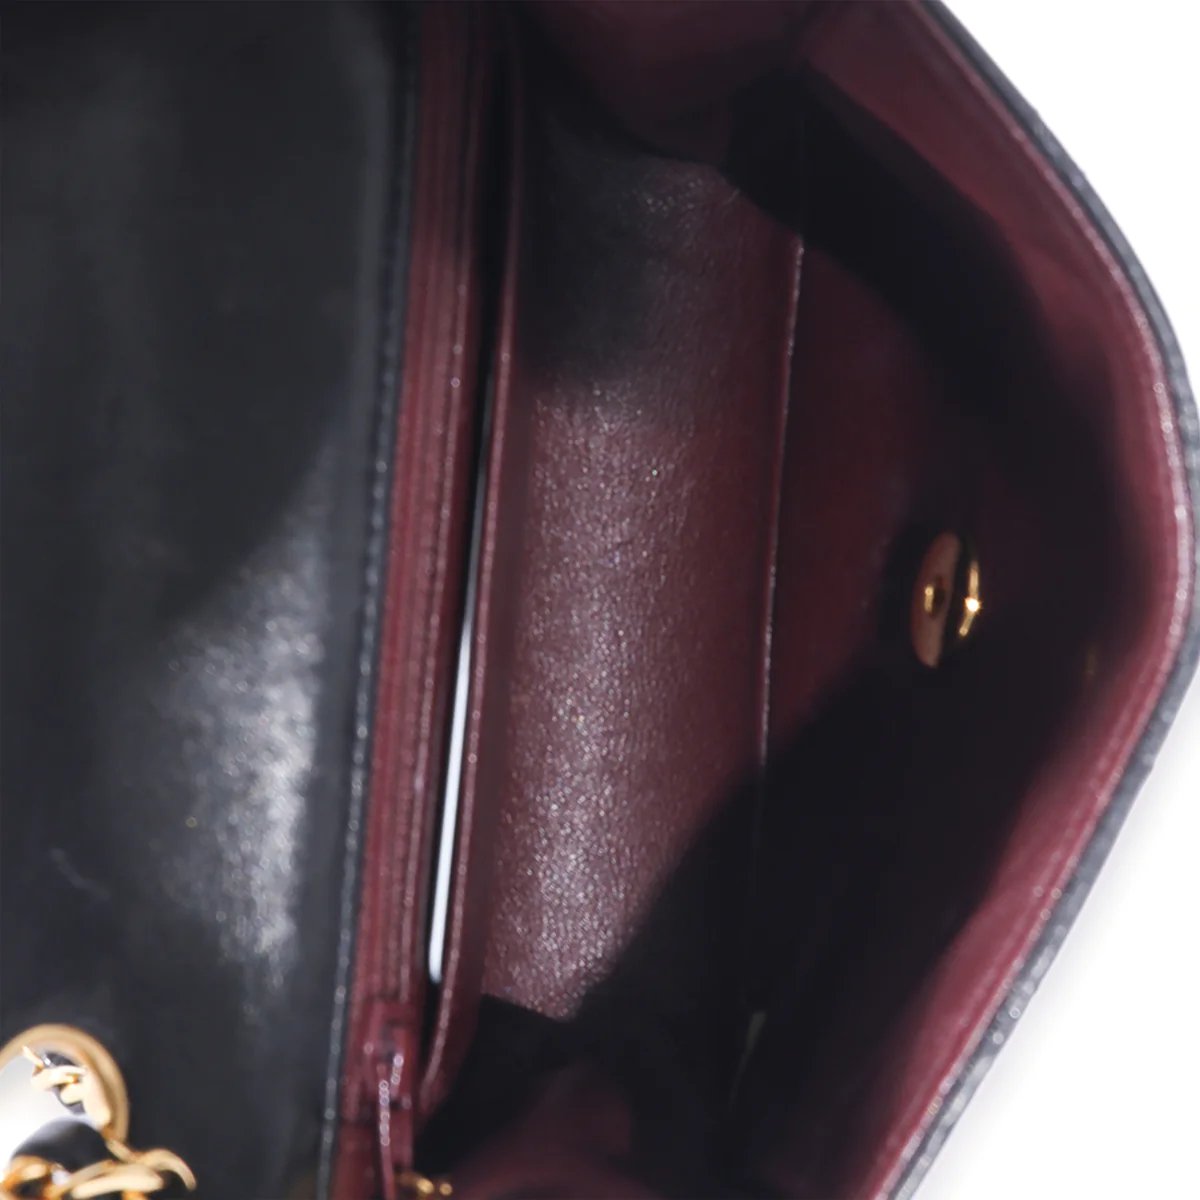 Chanel Black Quilted Lambskin Envelope Flap Shoulder Bag Q6B2FN1IKB003